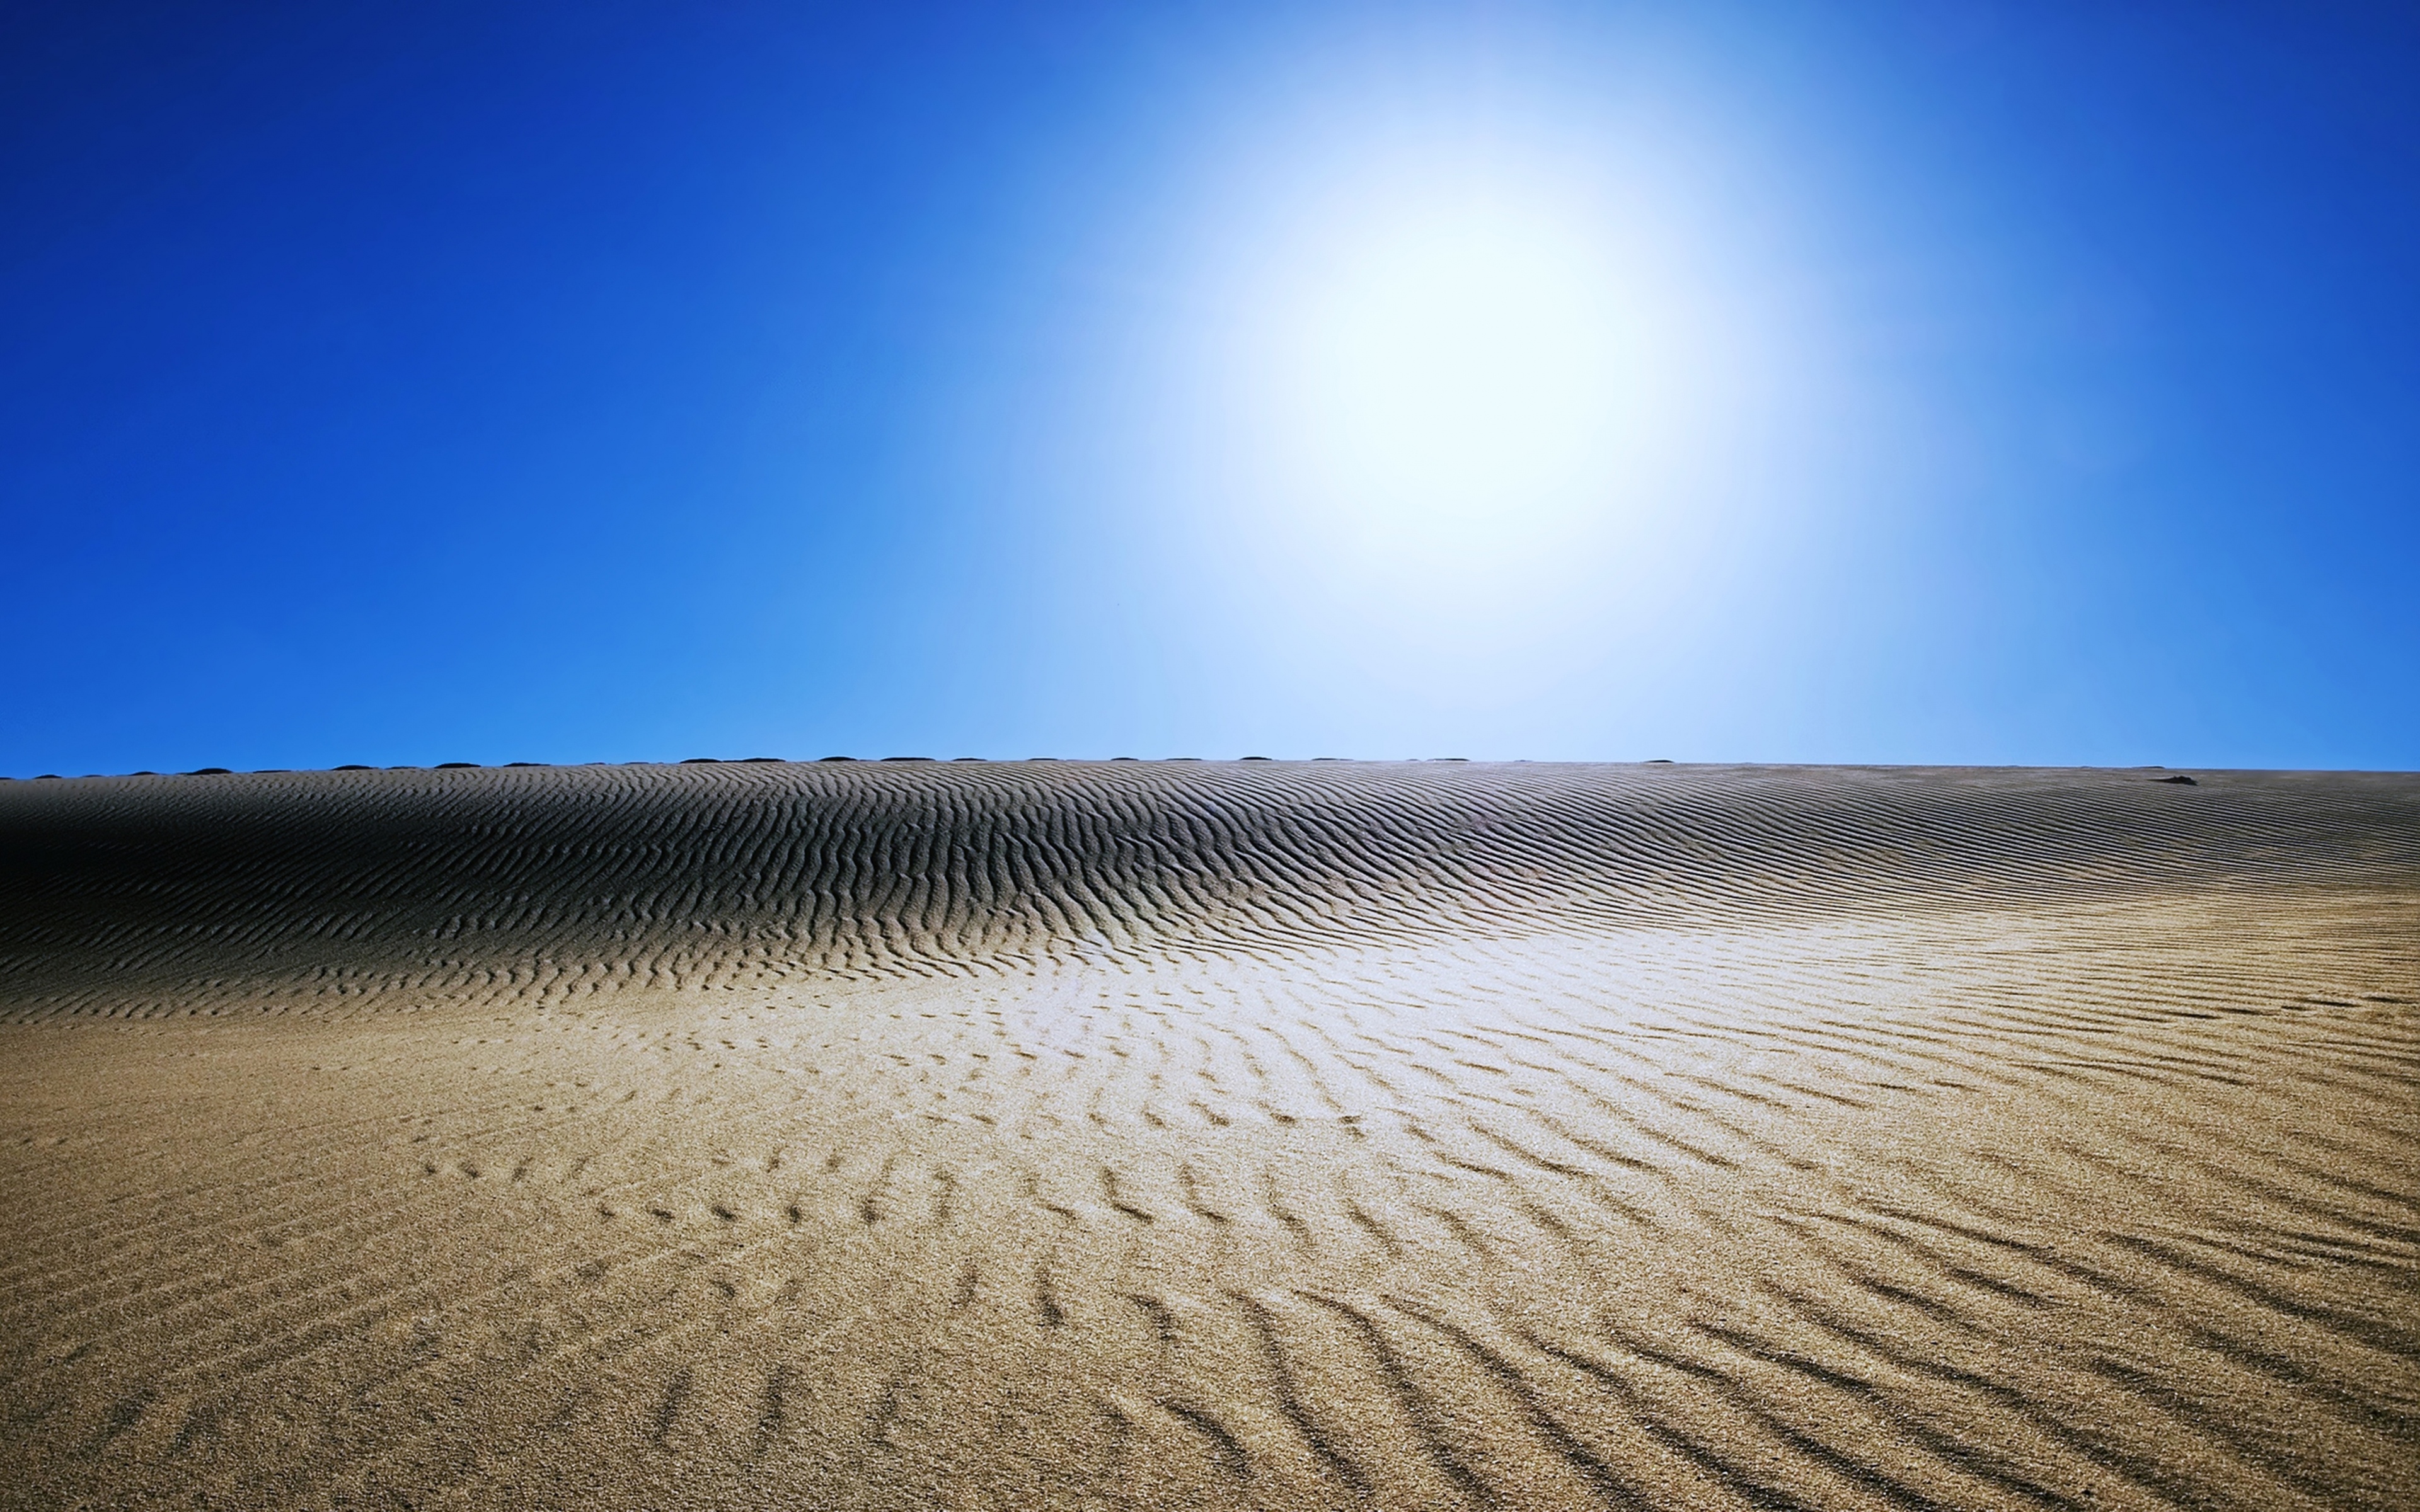 Sunny Day In Desert 4K Wallpapers